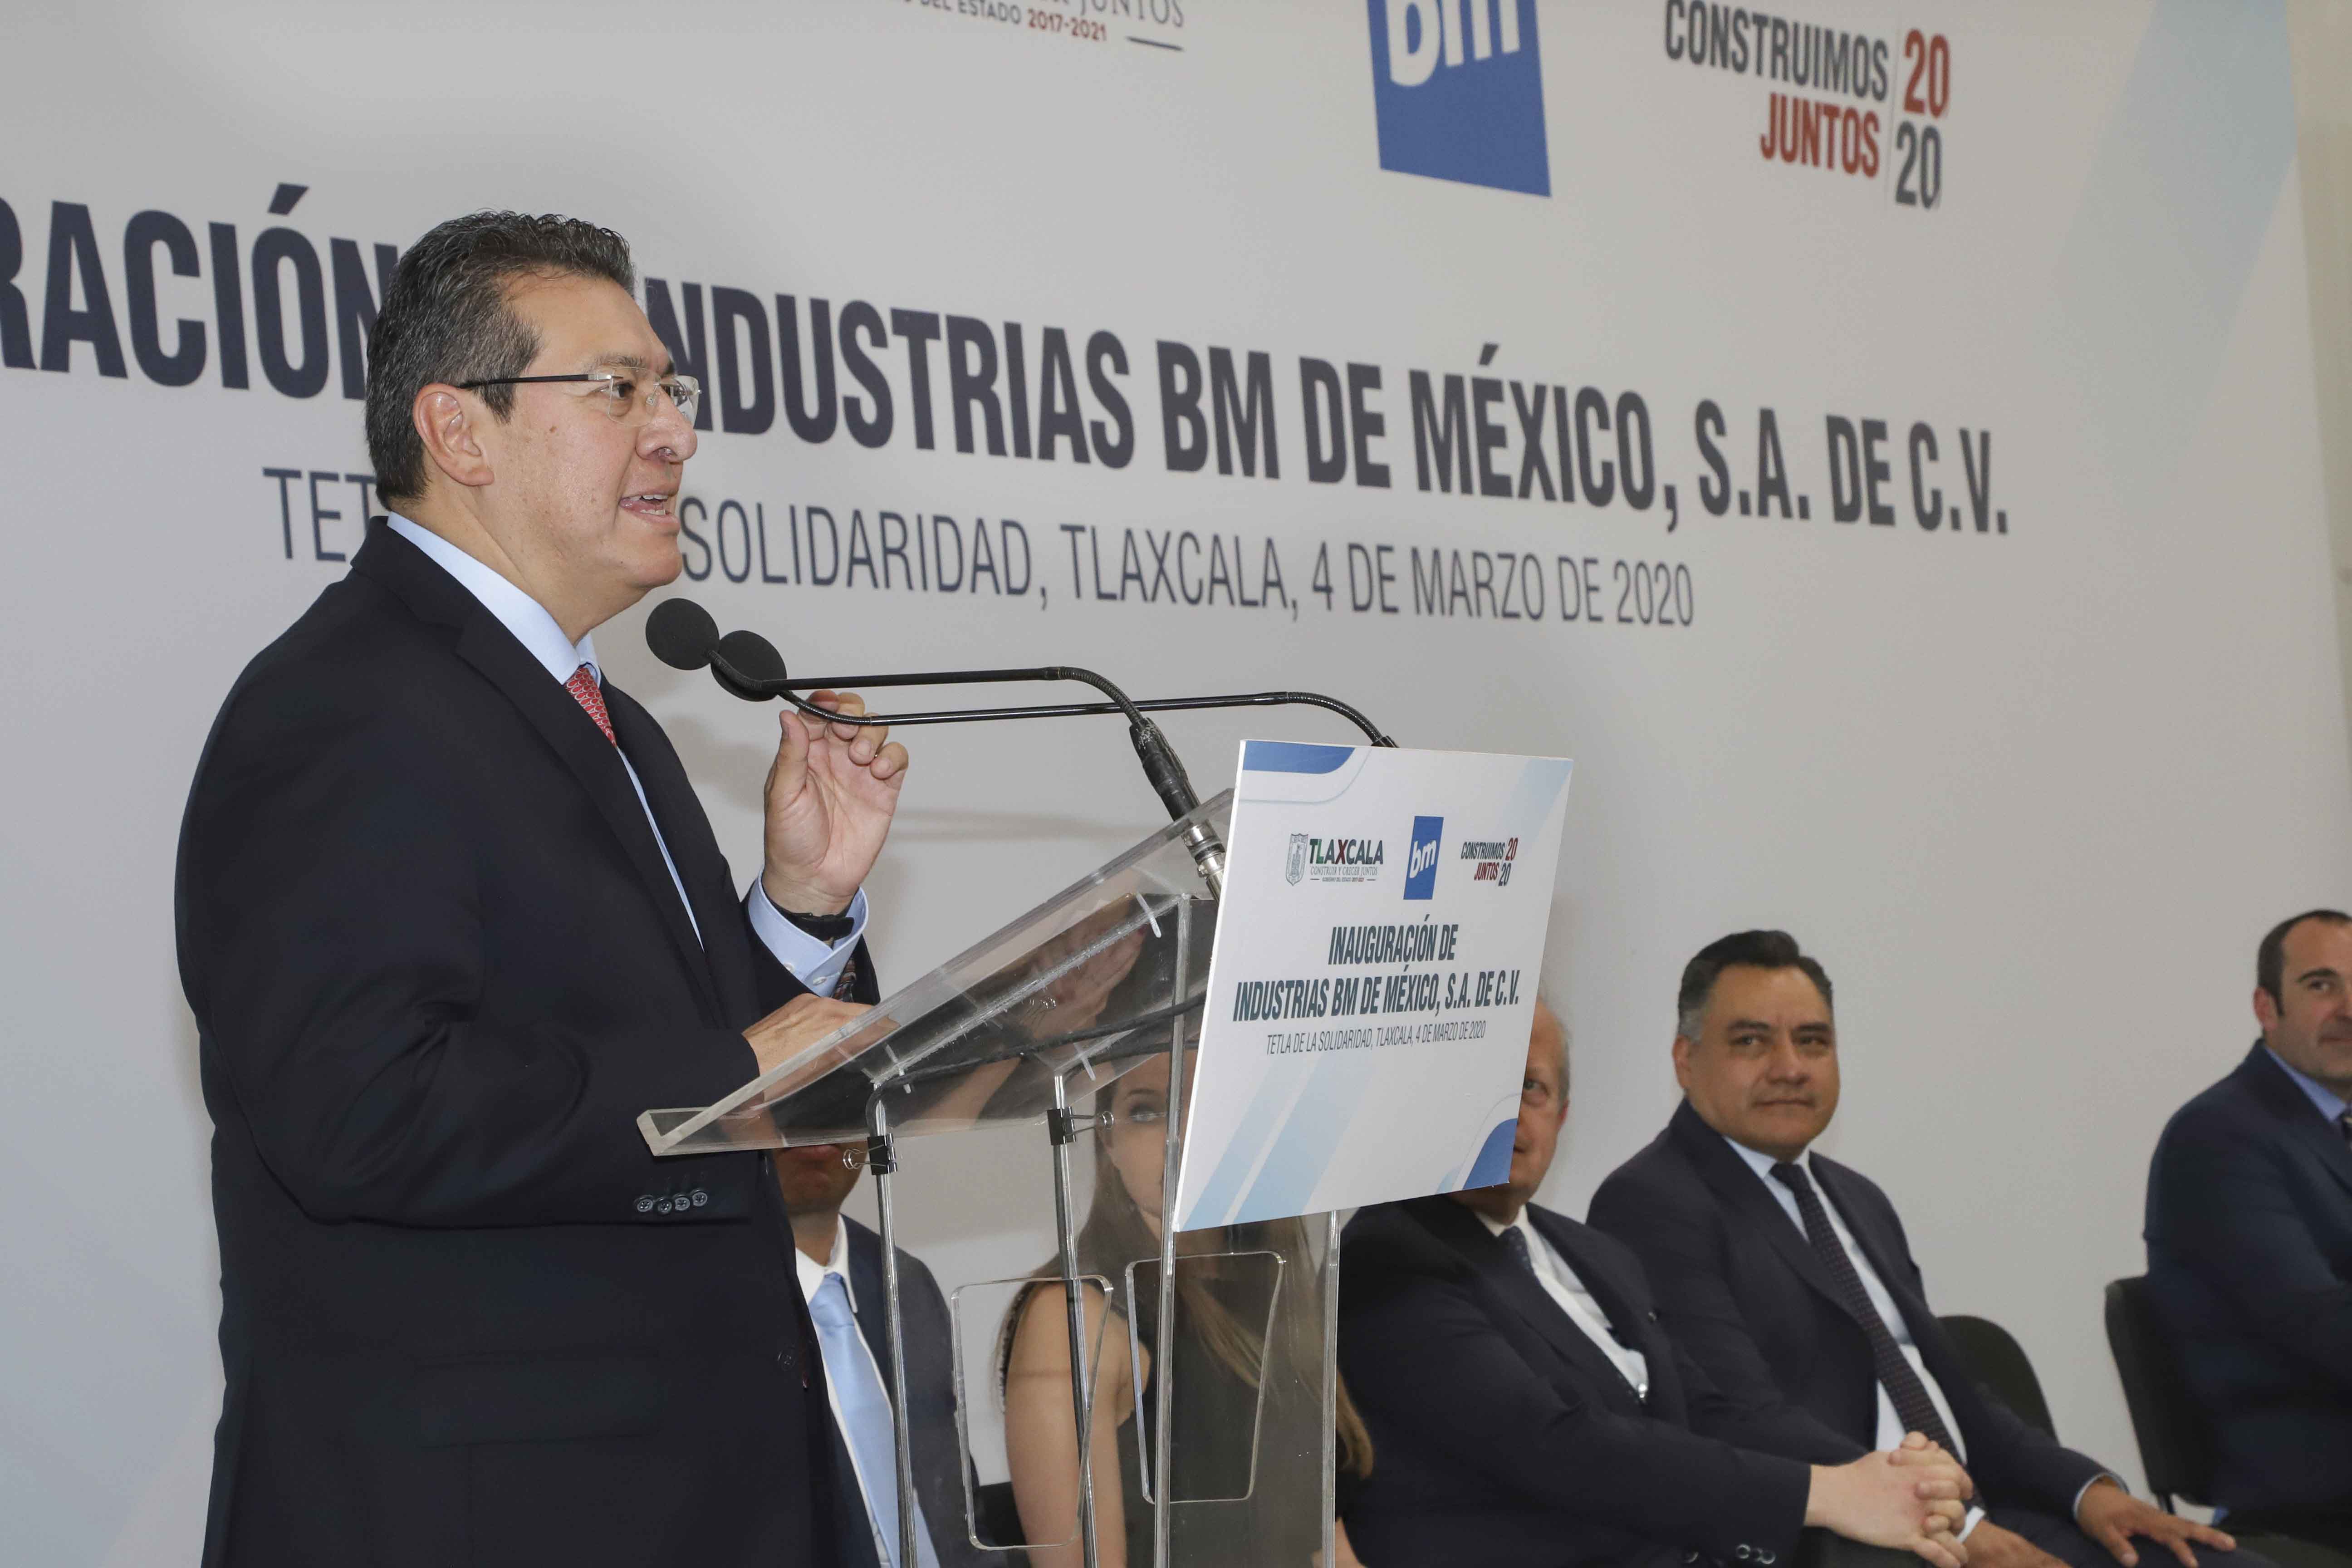 Desde Tlaxcala: Marco Mena inaugura industrias BM de México; genera 350 nuevos empleos.